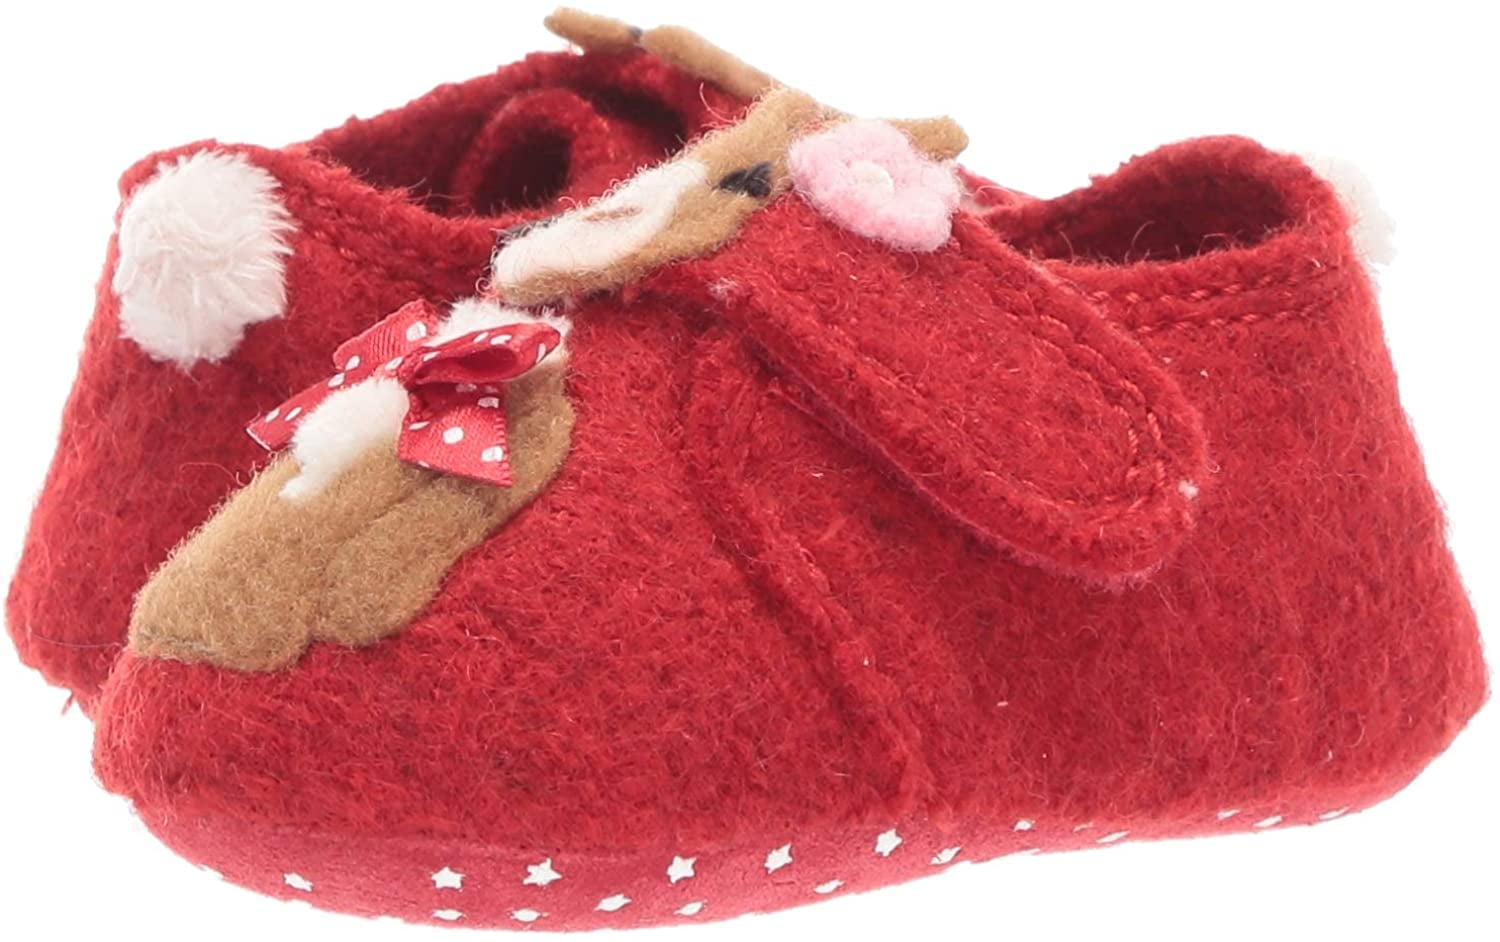 Living Kitzbuhel Boiled Wool No Slip Indoor Outdoor Baby Slipper Shoe Red Bunny 